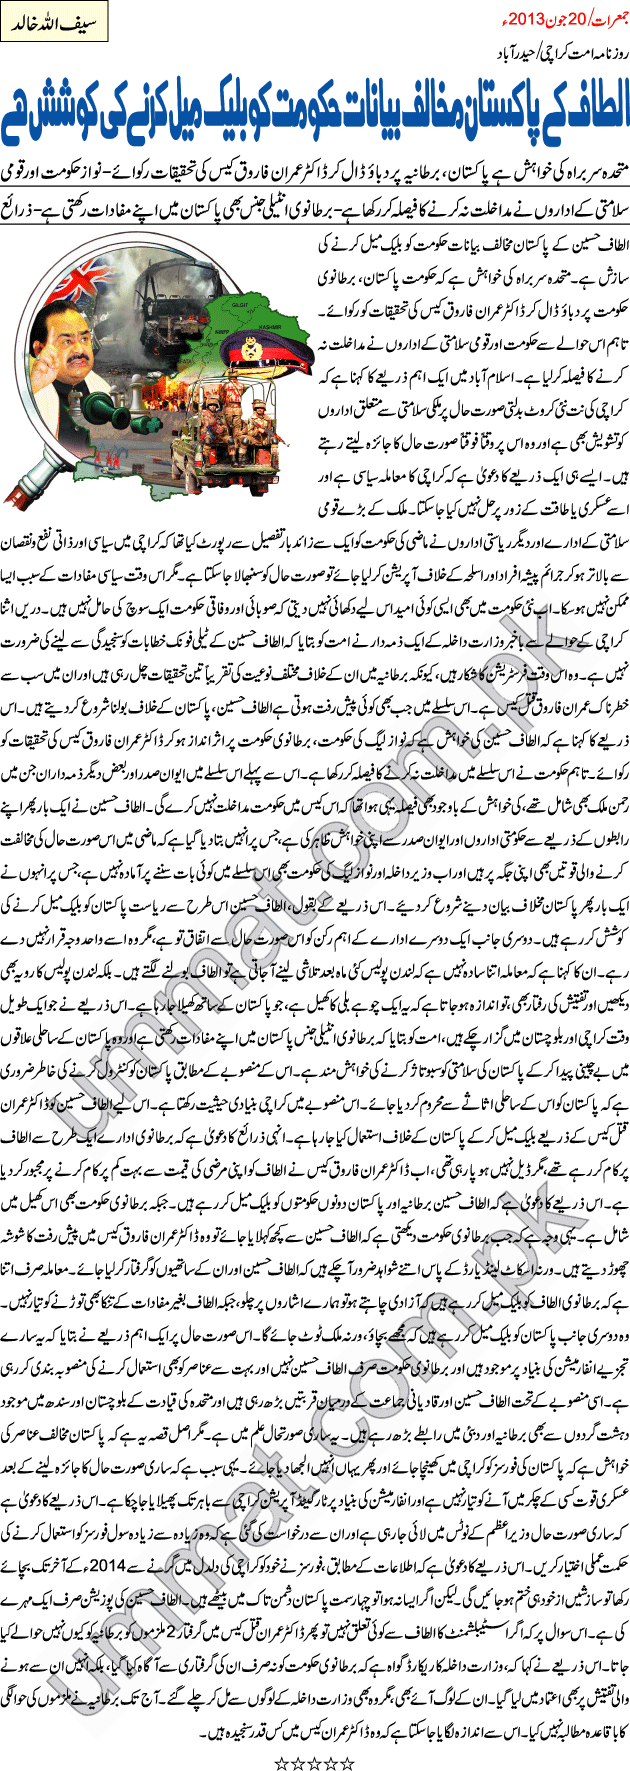 Dr. Imran Murder Case: Altaf Hussain black mailing Govt